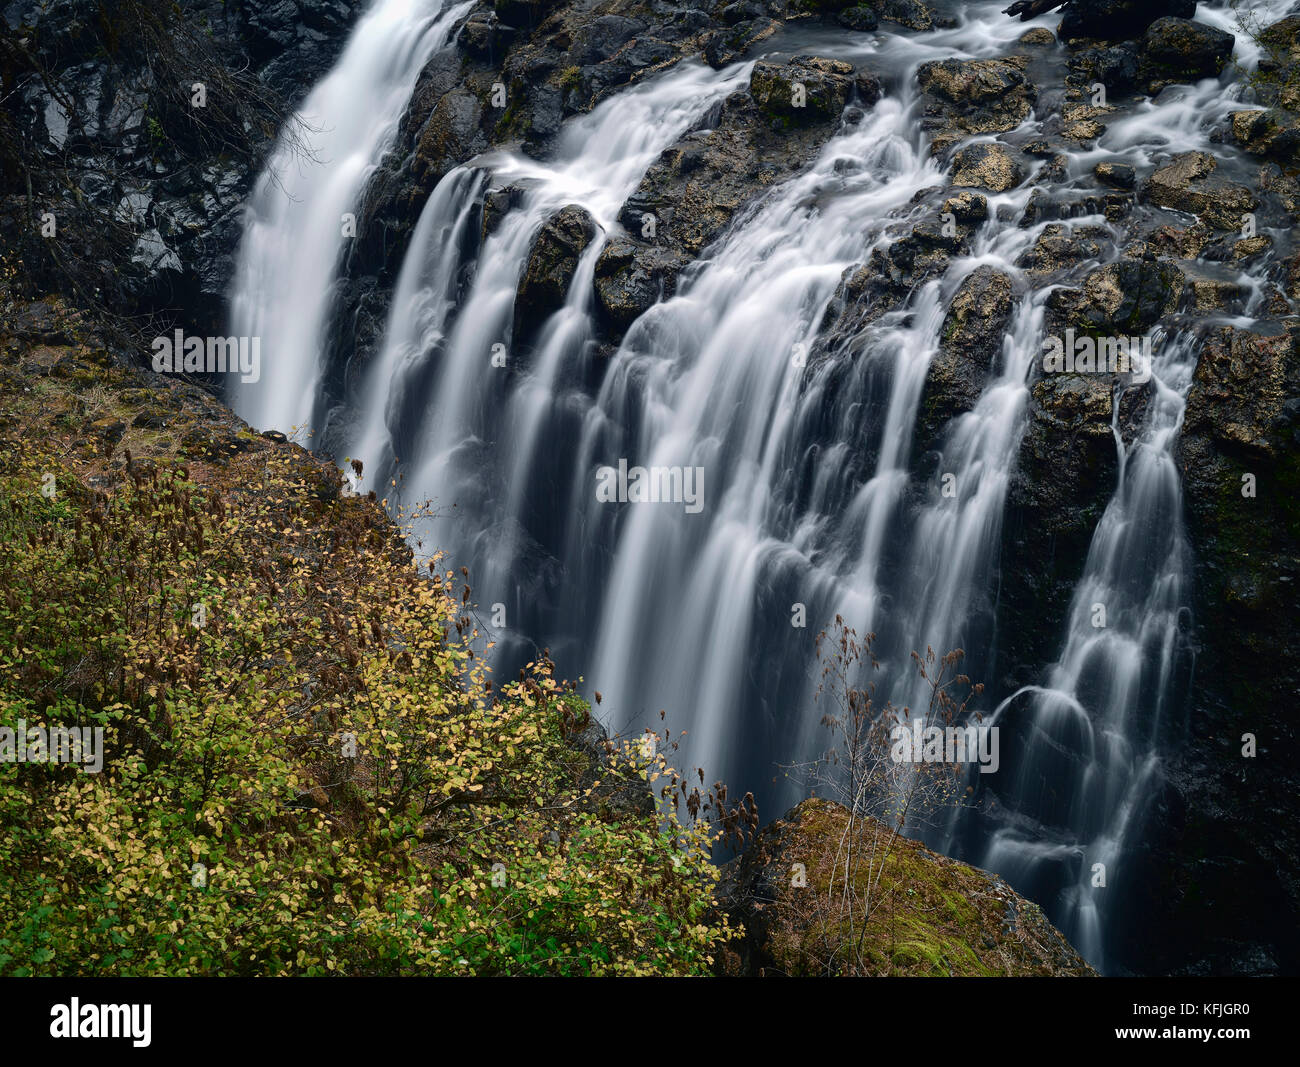 Paesaggio naturale della cascata in inglese river falls provincial park. errington, isola di Vancouver, BC, Canada Foto Stock